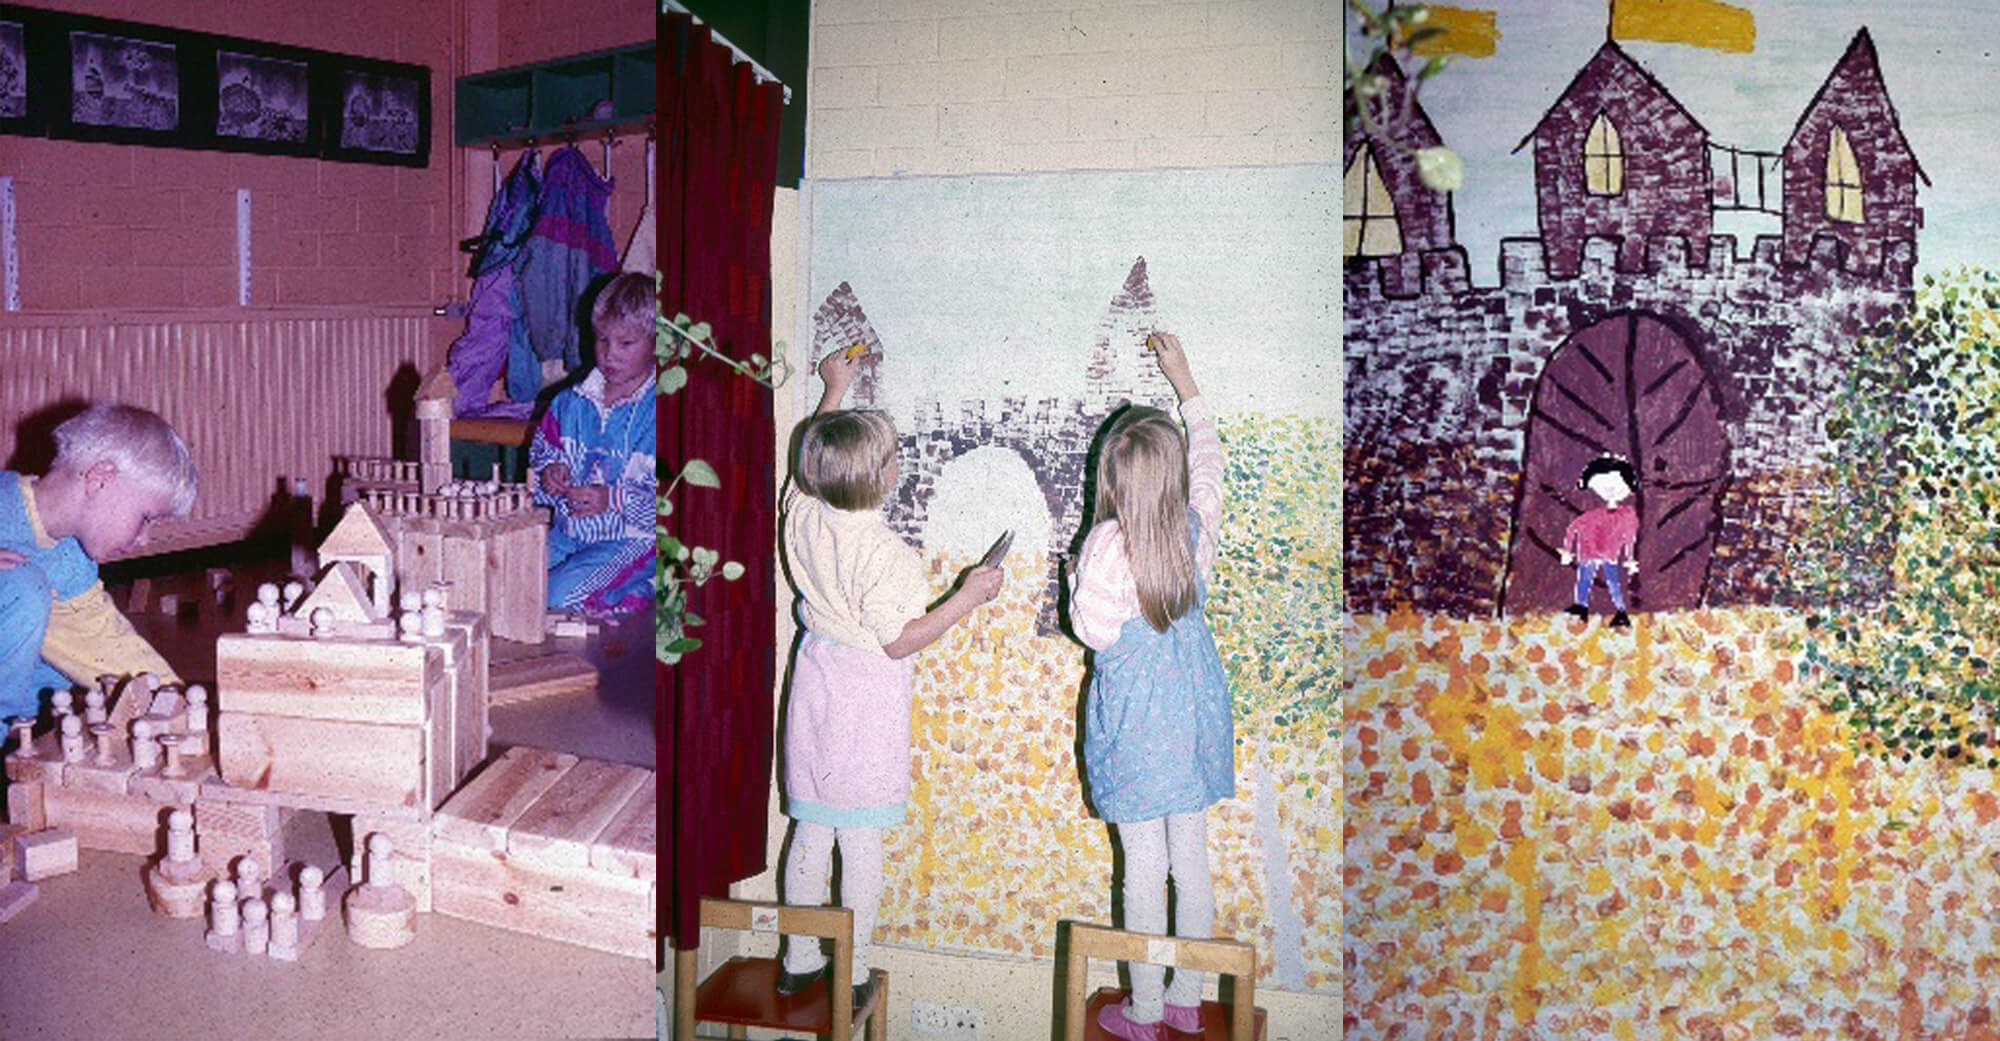 Kollaasikuva, jossa vasemmalla kaksi lasta rakentaa palikoista linnaa. Keskimmäisessä kuvassa kaksi lasta maalaa pilkutustekniikalla seinälle asetettuun suureen maalausalustaan linnan ääriviivoja. Oikeanpuoleisessa kuvassa maalaus, jota kaksi lasta keskimmäisessä kuvassa tekevät, on valmis. Teoksen tekemiseen on osallistunut varmasti koko lapsiryhmän lapset omilla vuoroillaan. Lastentarhamuseon valokuvakokoelma.